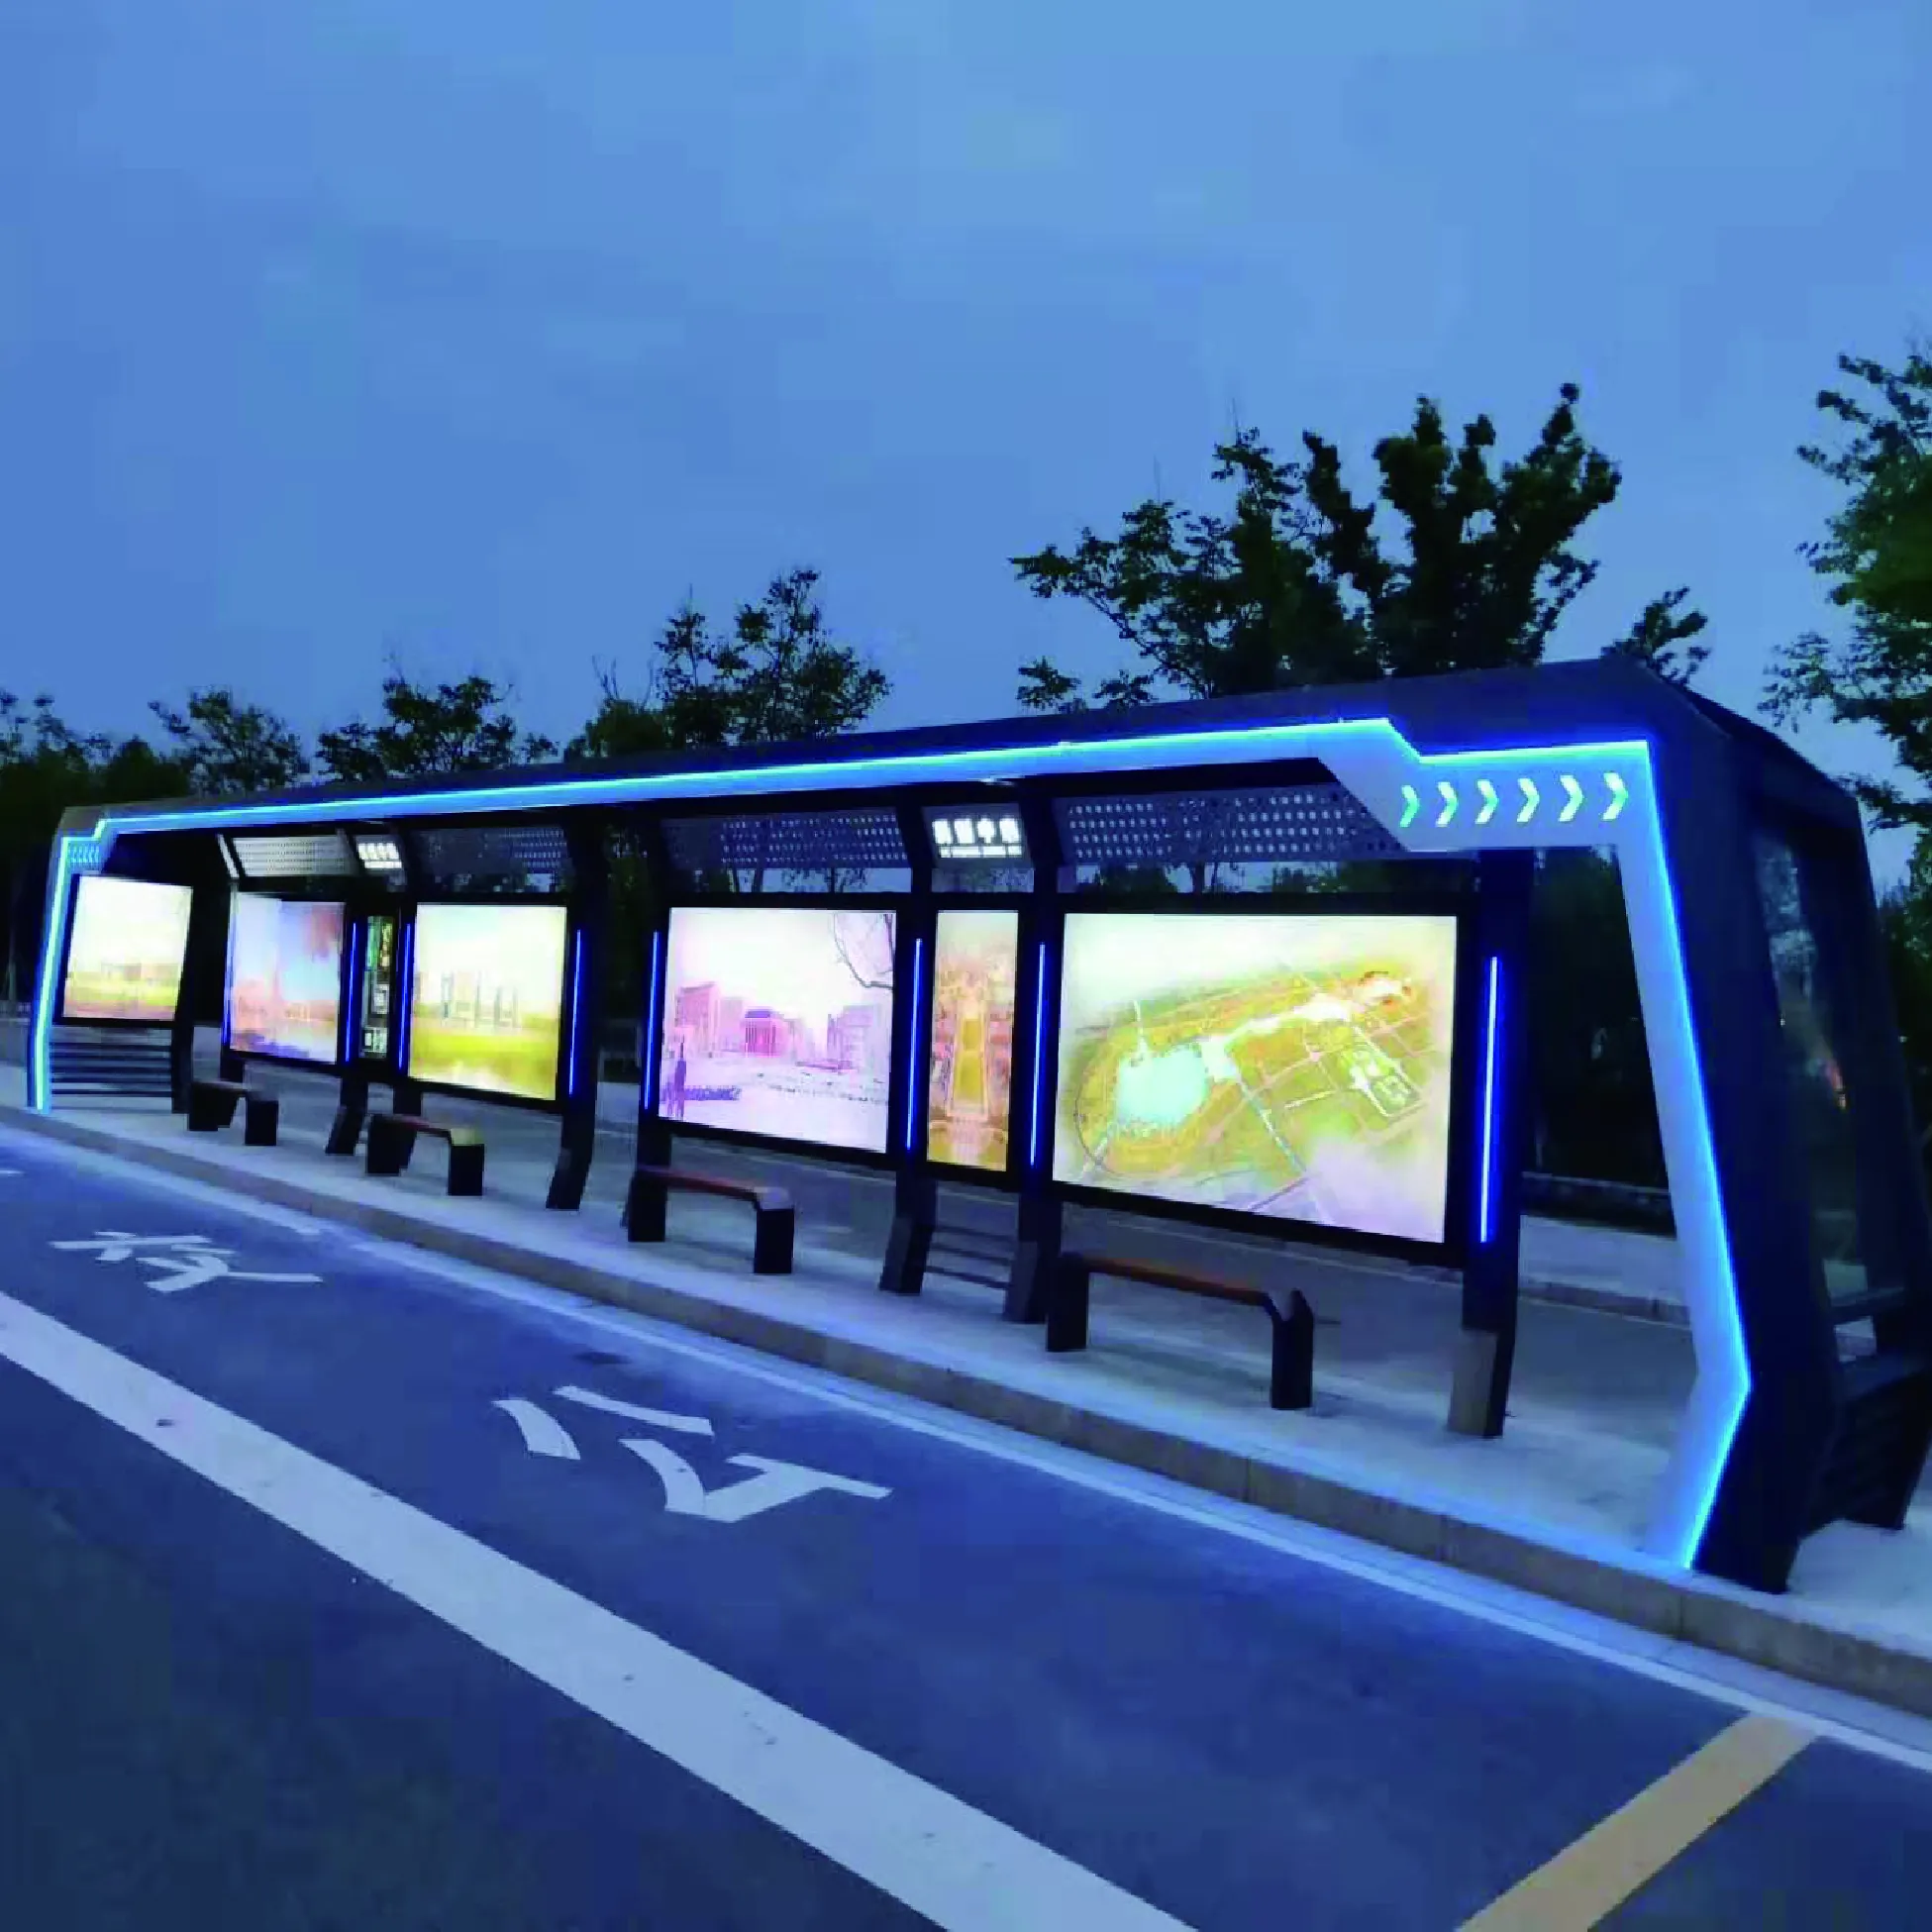 Автобусная остановка открытого типа для пассажиров с расписанием и рекламной панелью